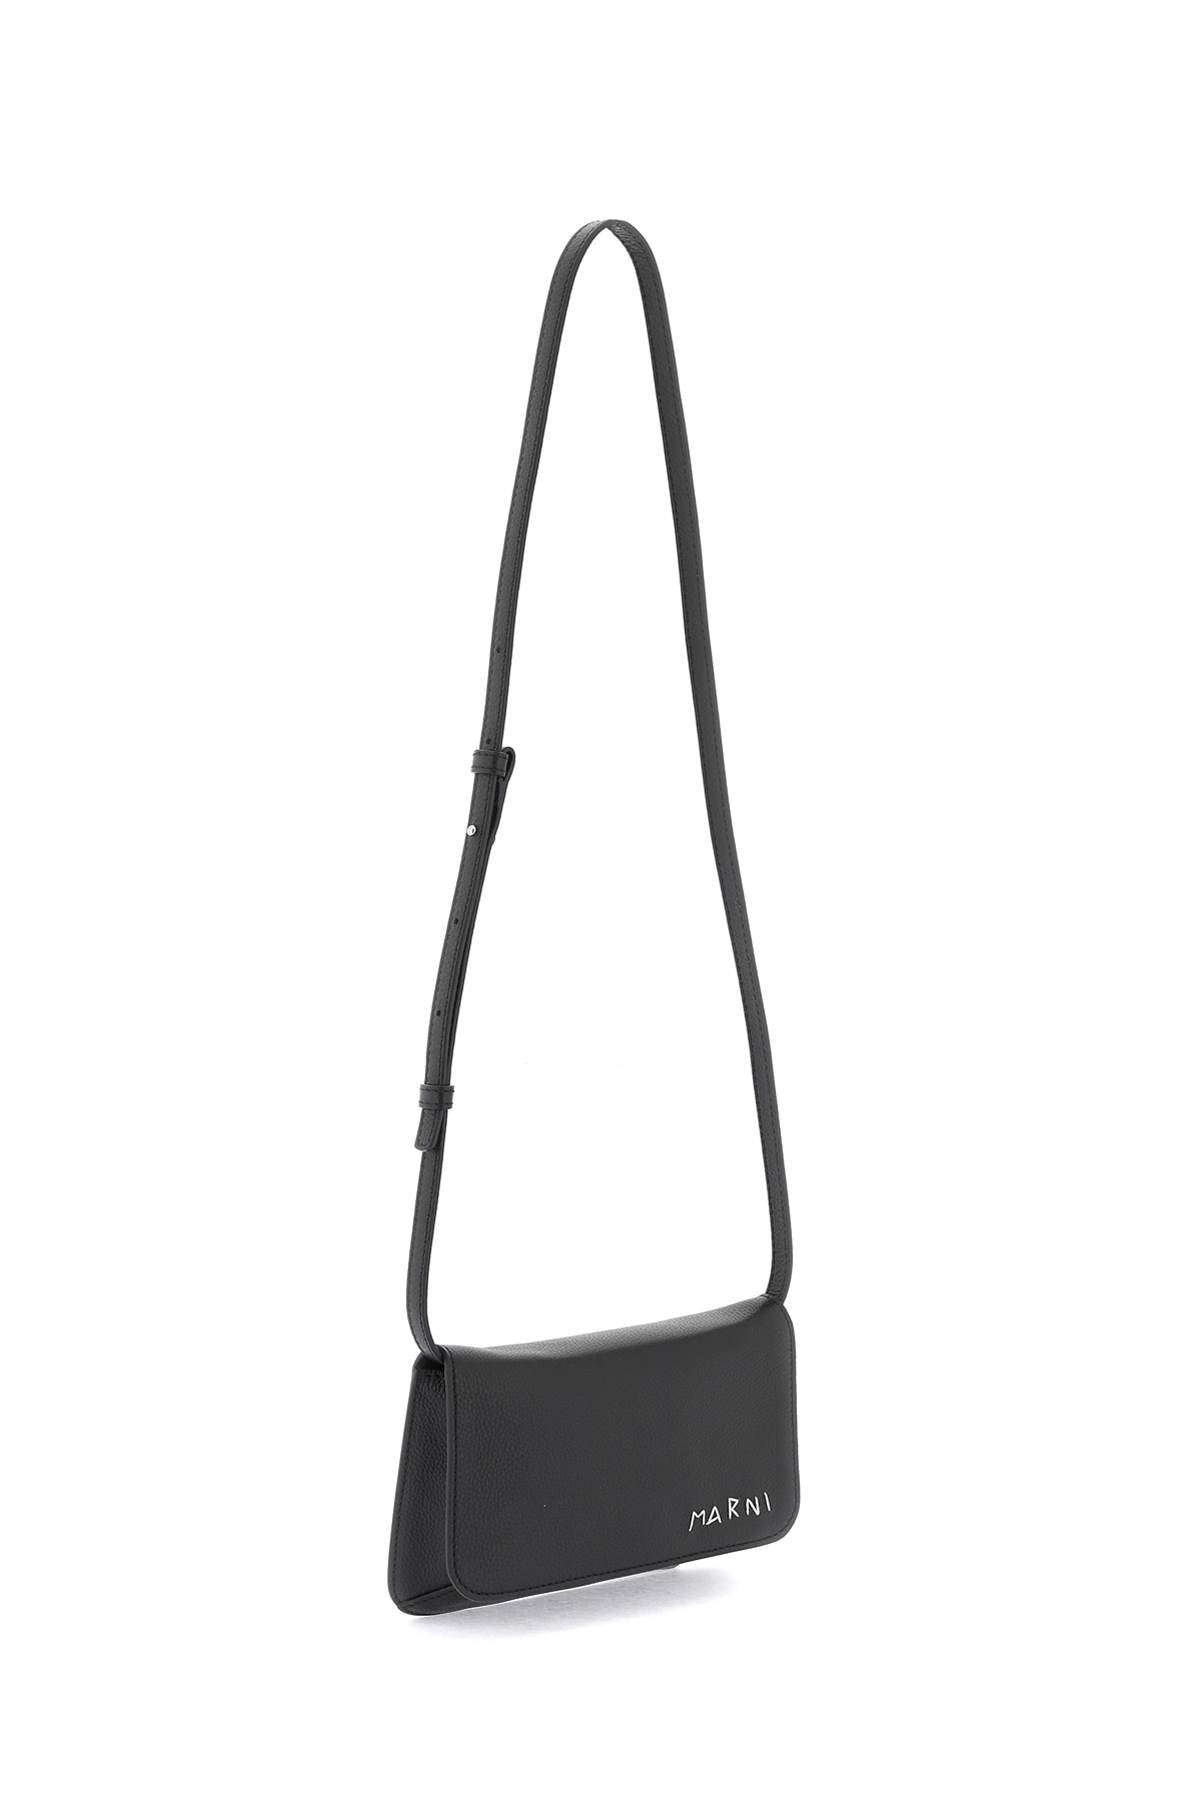 MARNI Black Leather Shoulder Handbag with Logo for Men